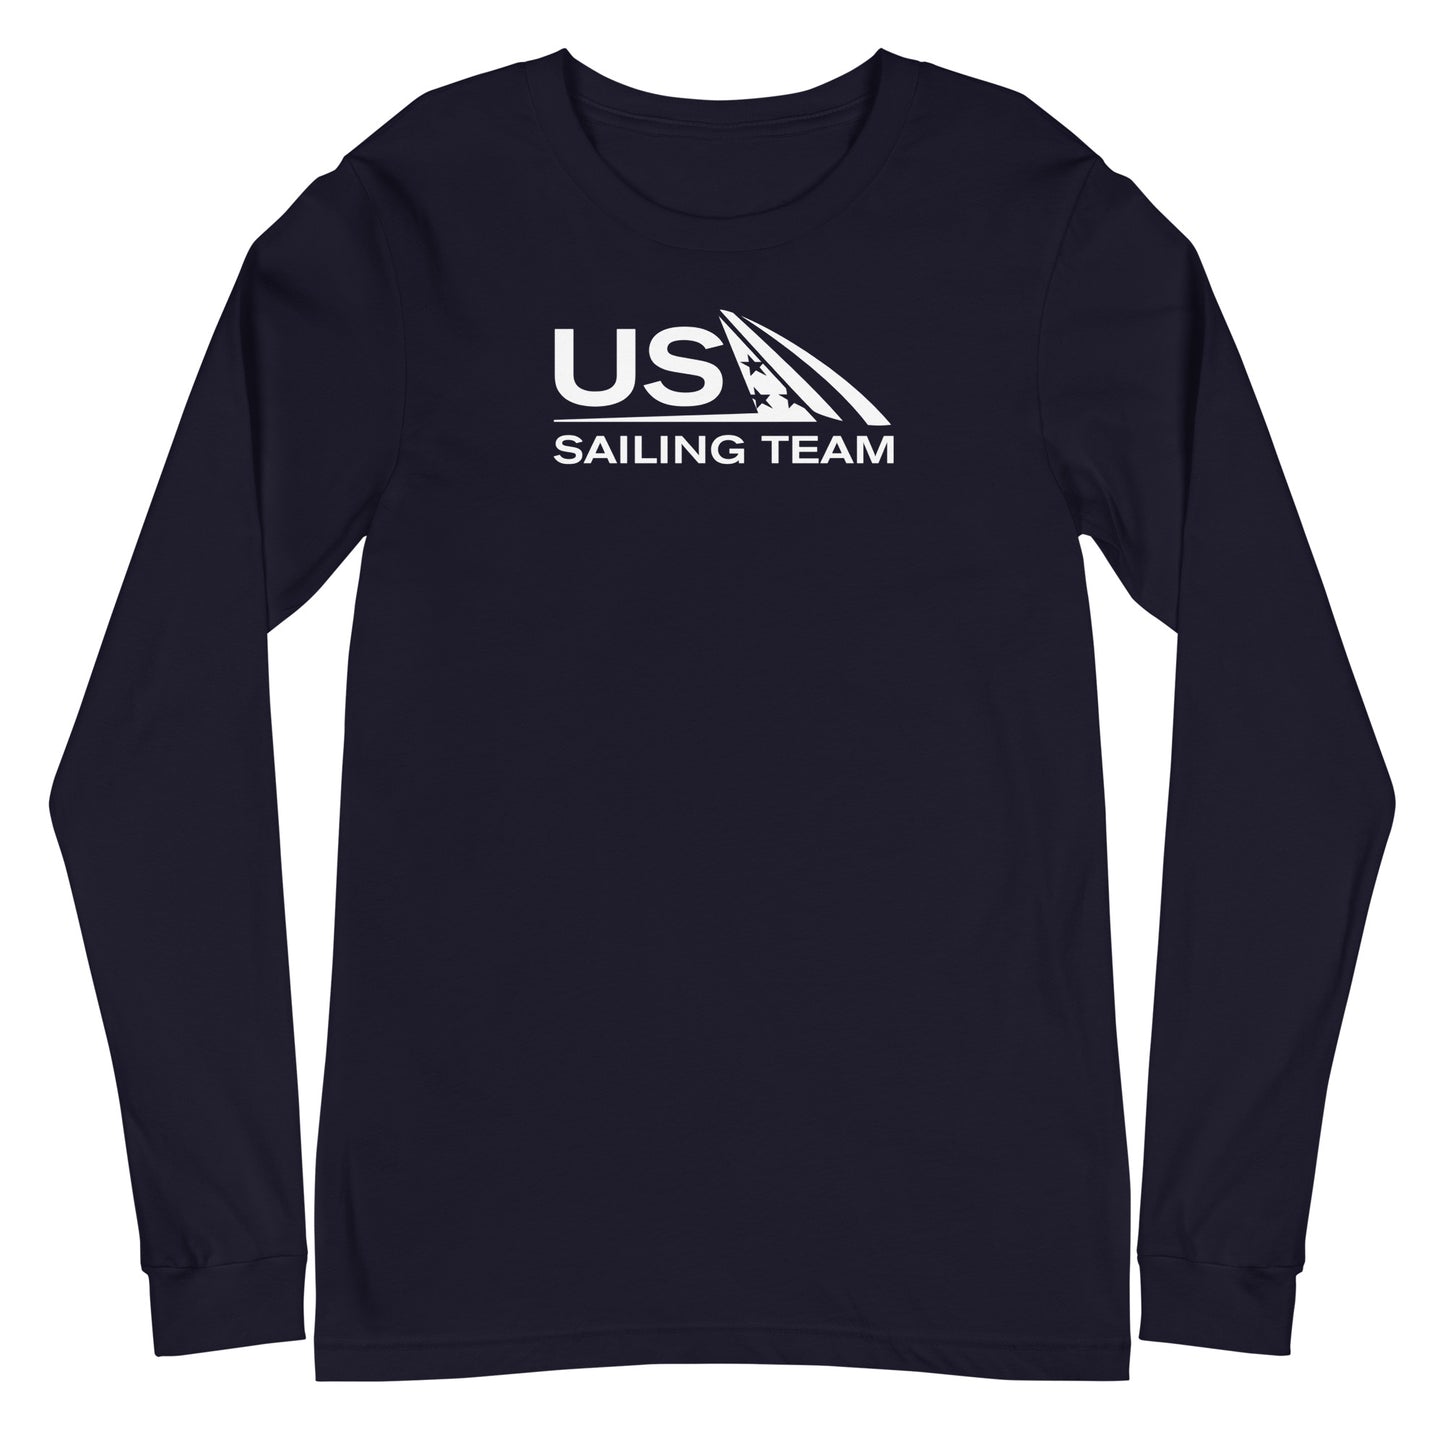 Unisex Long Sleeve Tee (US Sailing Team)